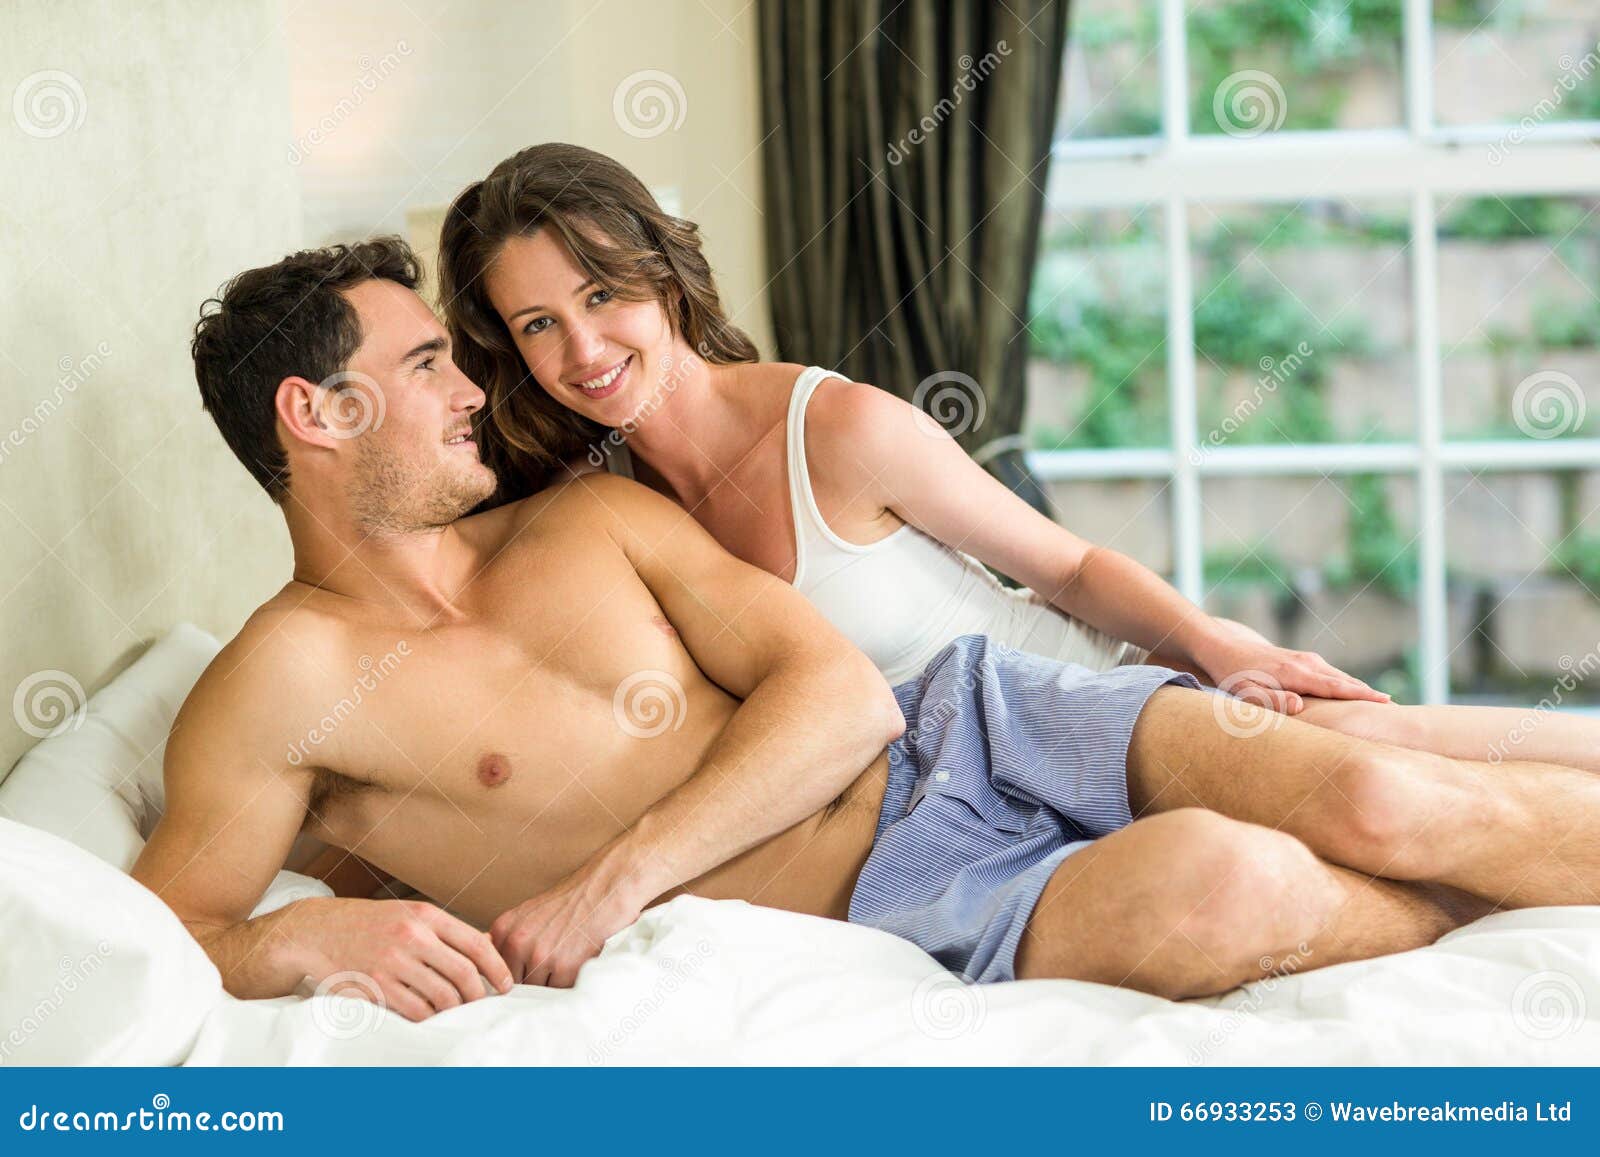 Молодые расслабляются. Расслабленная молодая пара в постели. Молодая пара отдыхает в постели. Молодая пара в кровати. Сорокалетние парочки в постели.